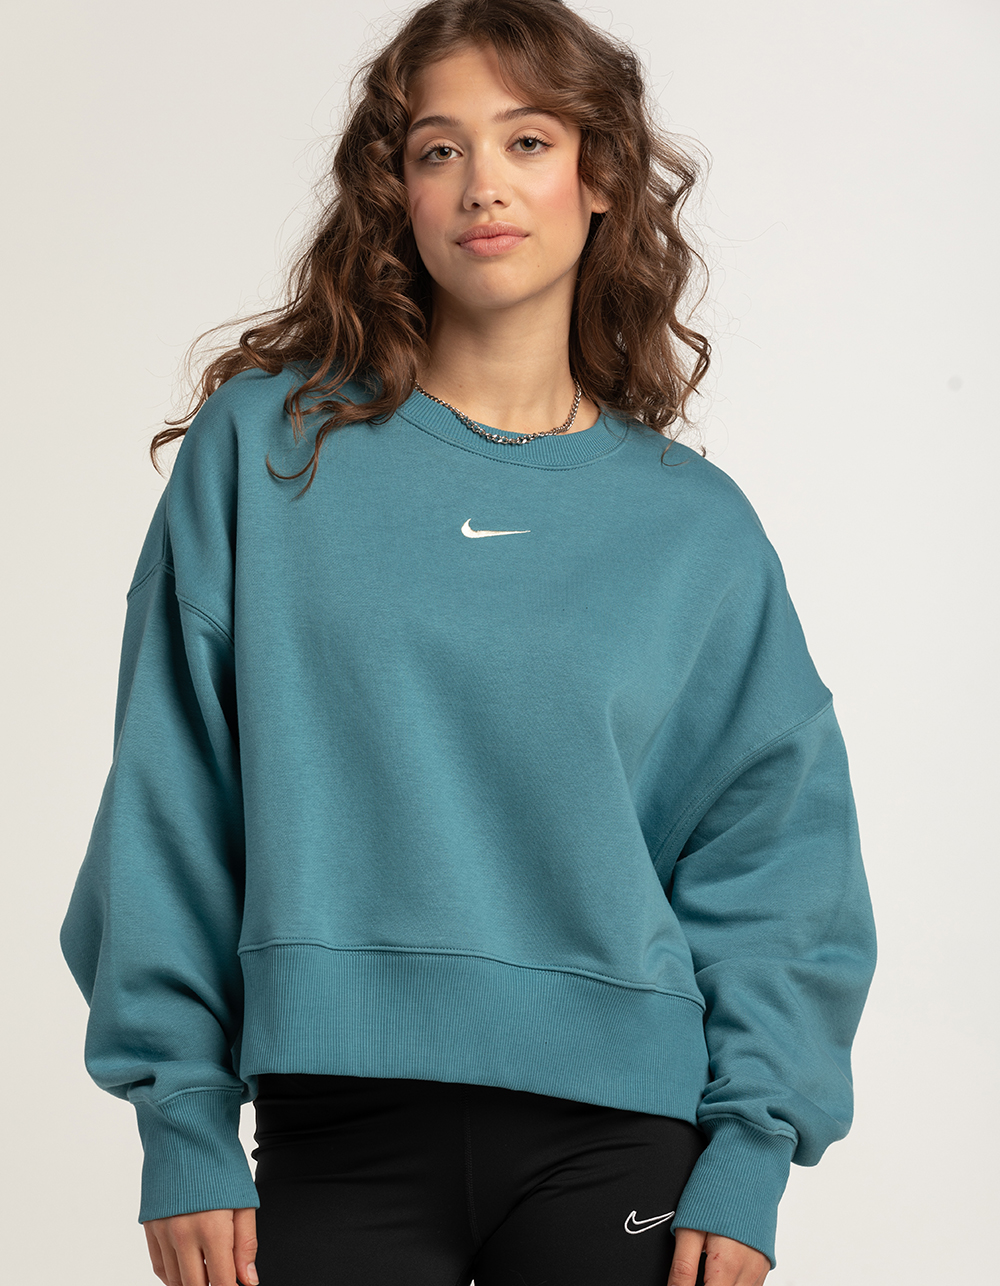 Sportswear Phoenix Womens Oversized Crewneck Sweatshirt - TEAL BLUE Tillys